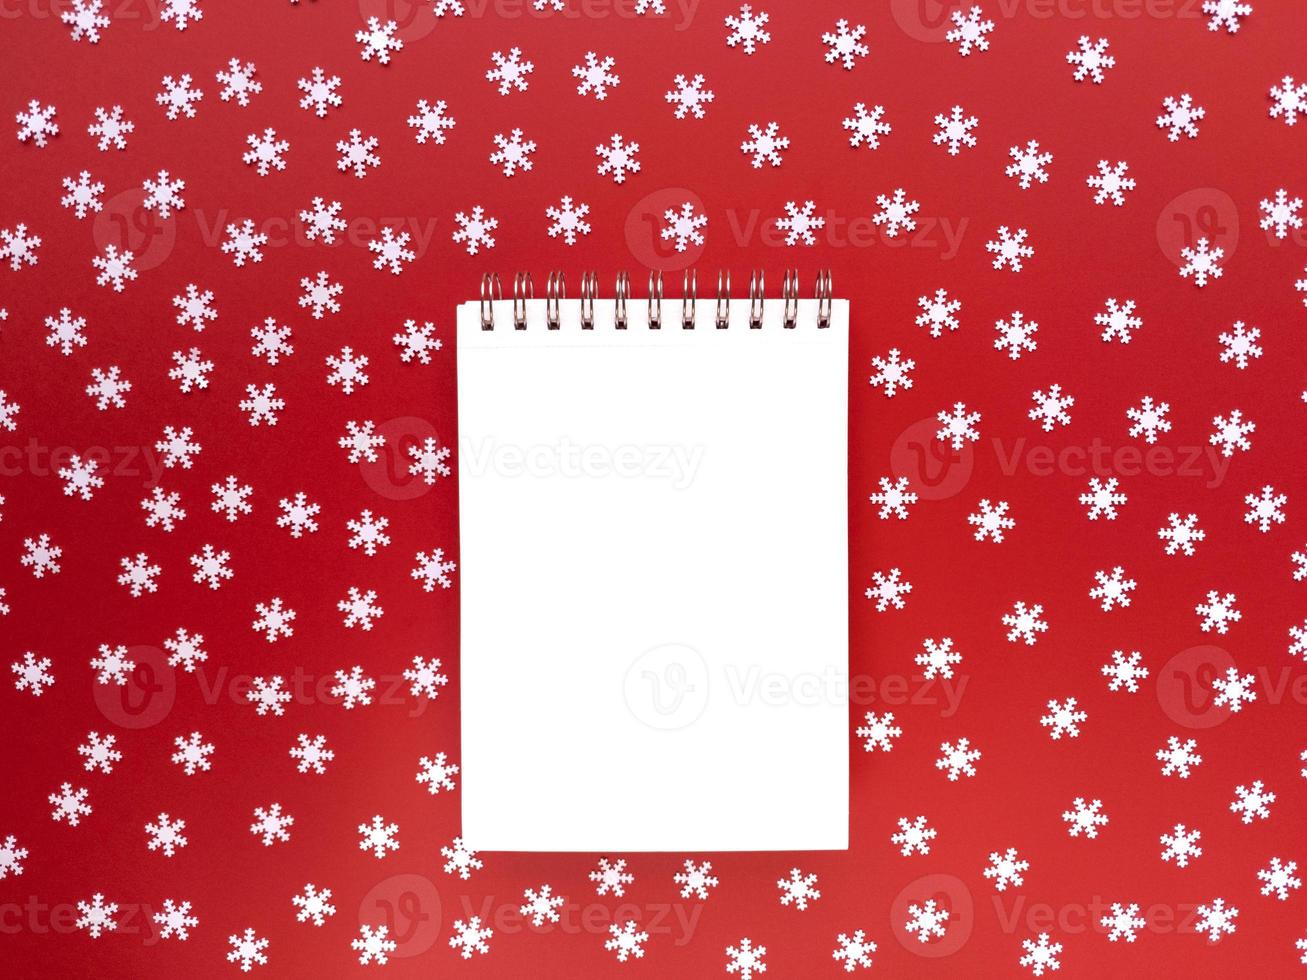 folha em branco do caderno com flocos de neve brancos espalhados sobre fundo vermelho. conceito educacional. lay flat simples com espaço de cópia. foto. foto